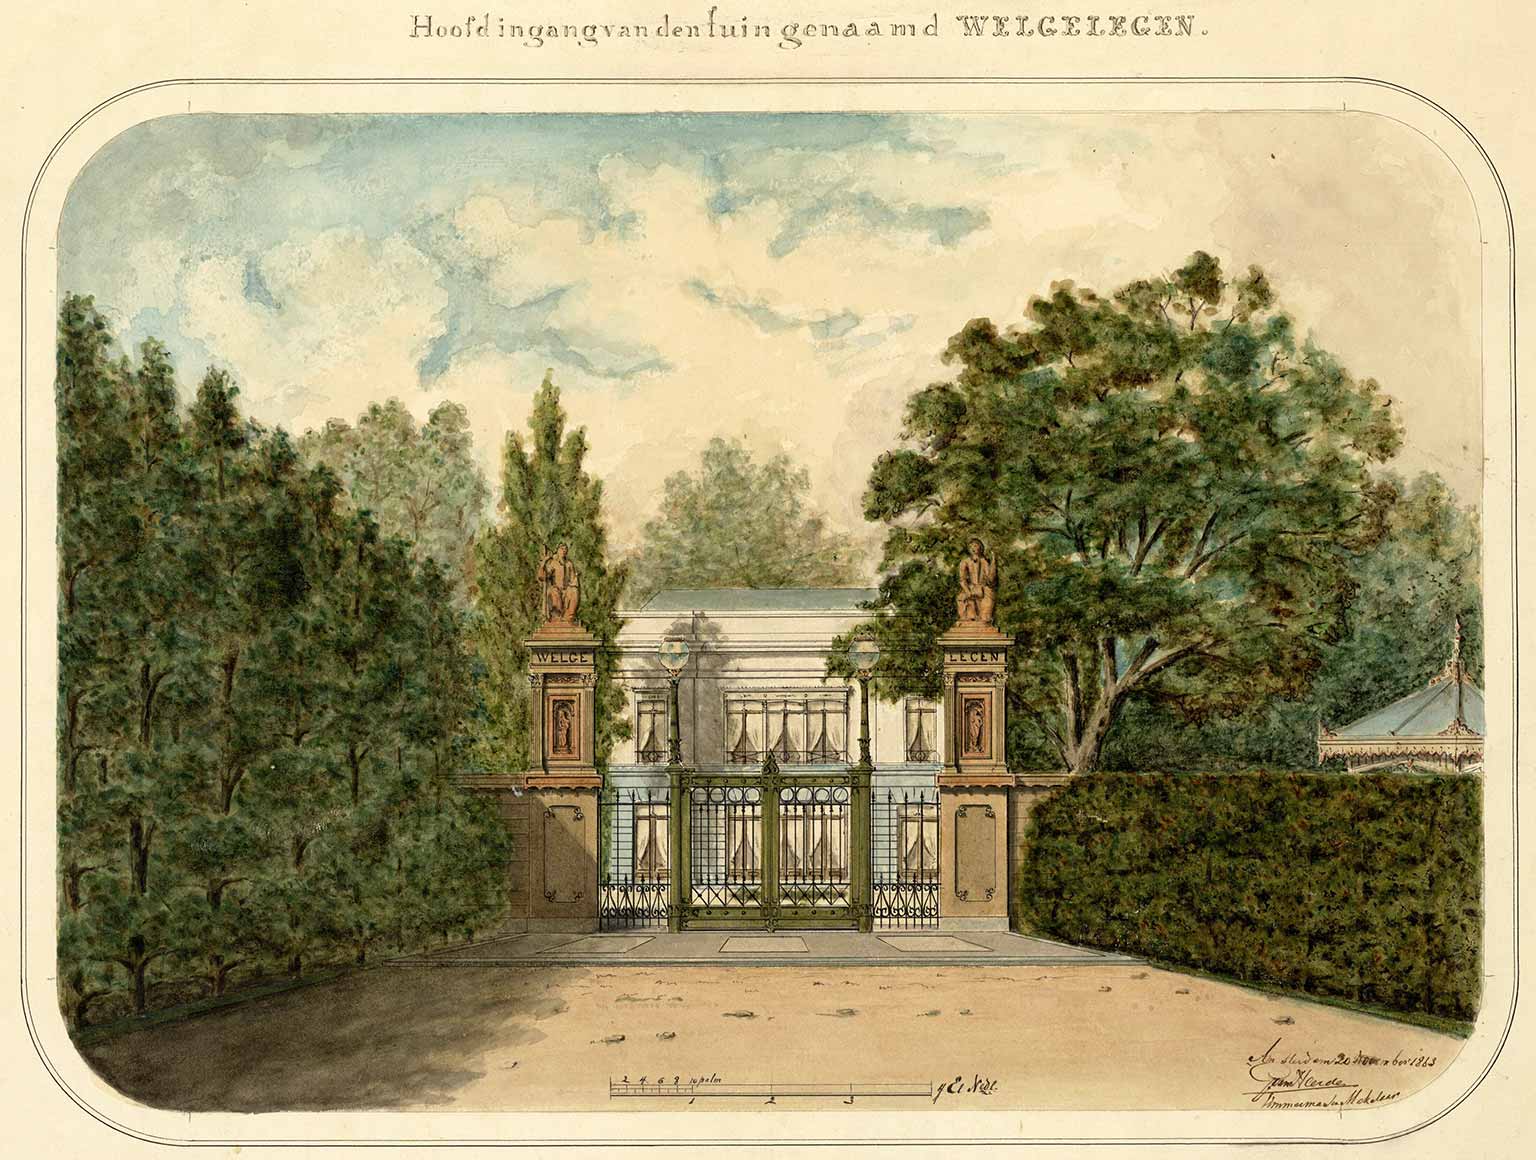 Herberg Welgelegen, Amsterdam, in 1863, toen in het Westerplantsoen